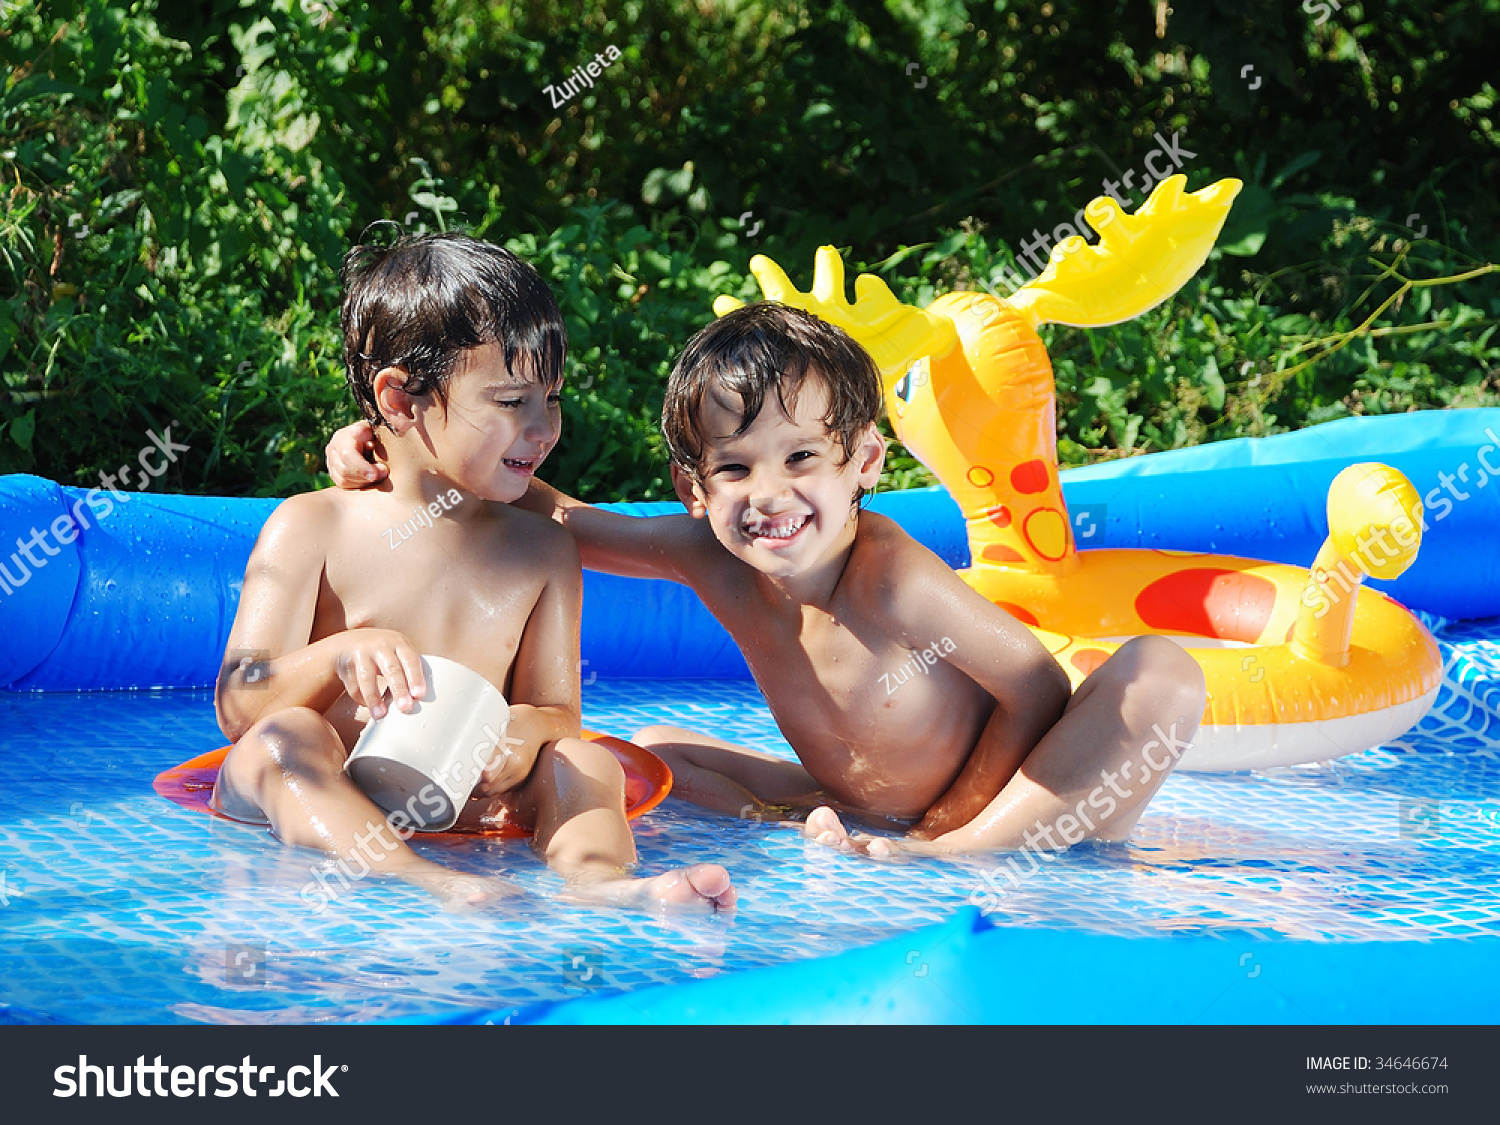 Маленькие купается бассейне. Дети в бассейне. Купание детей в бассейне на даче. Мальчик купается в бассейне. Дети в бассейне на даче купаются.